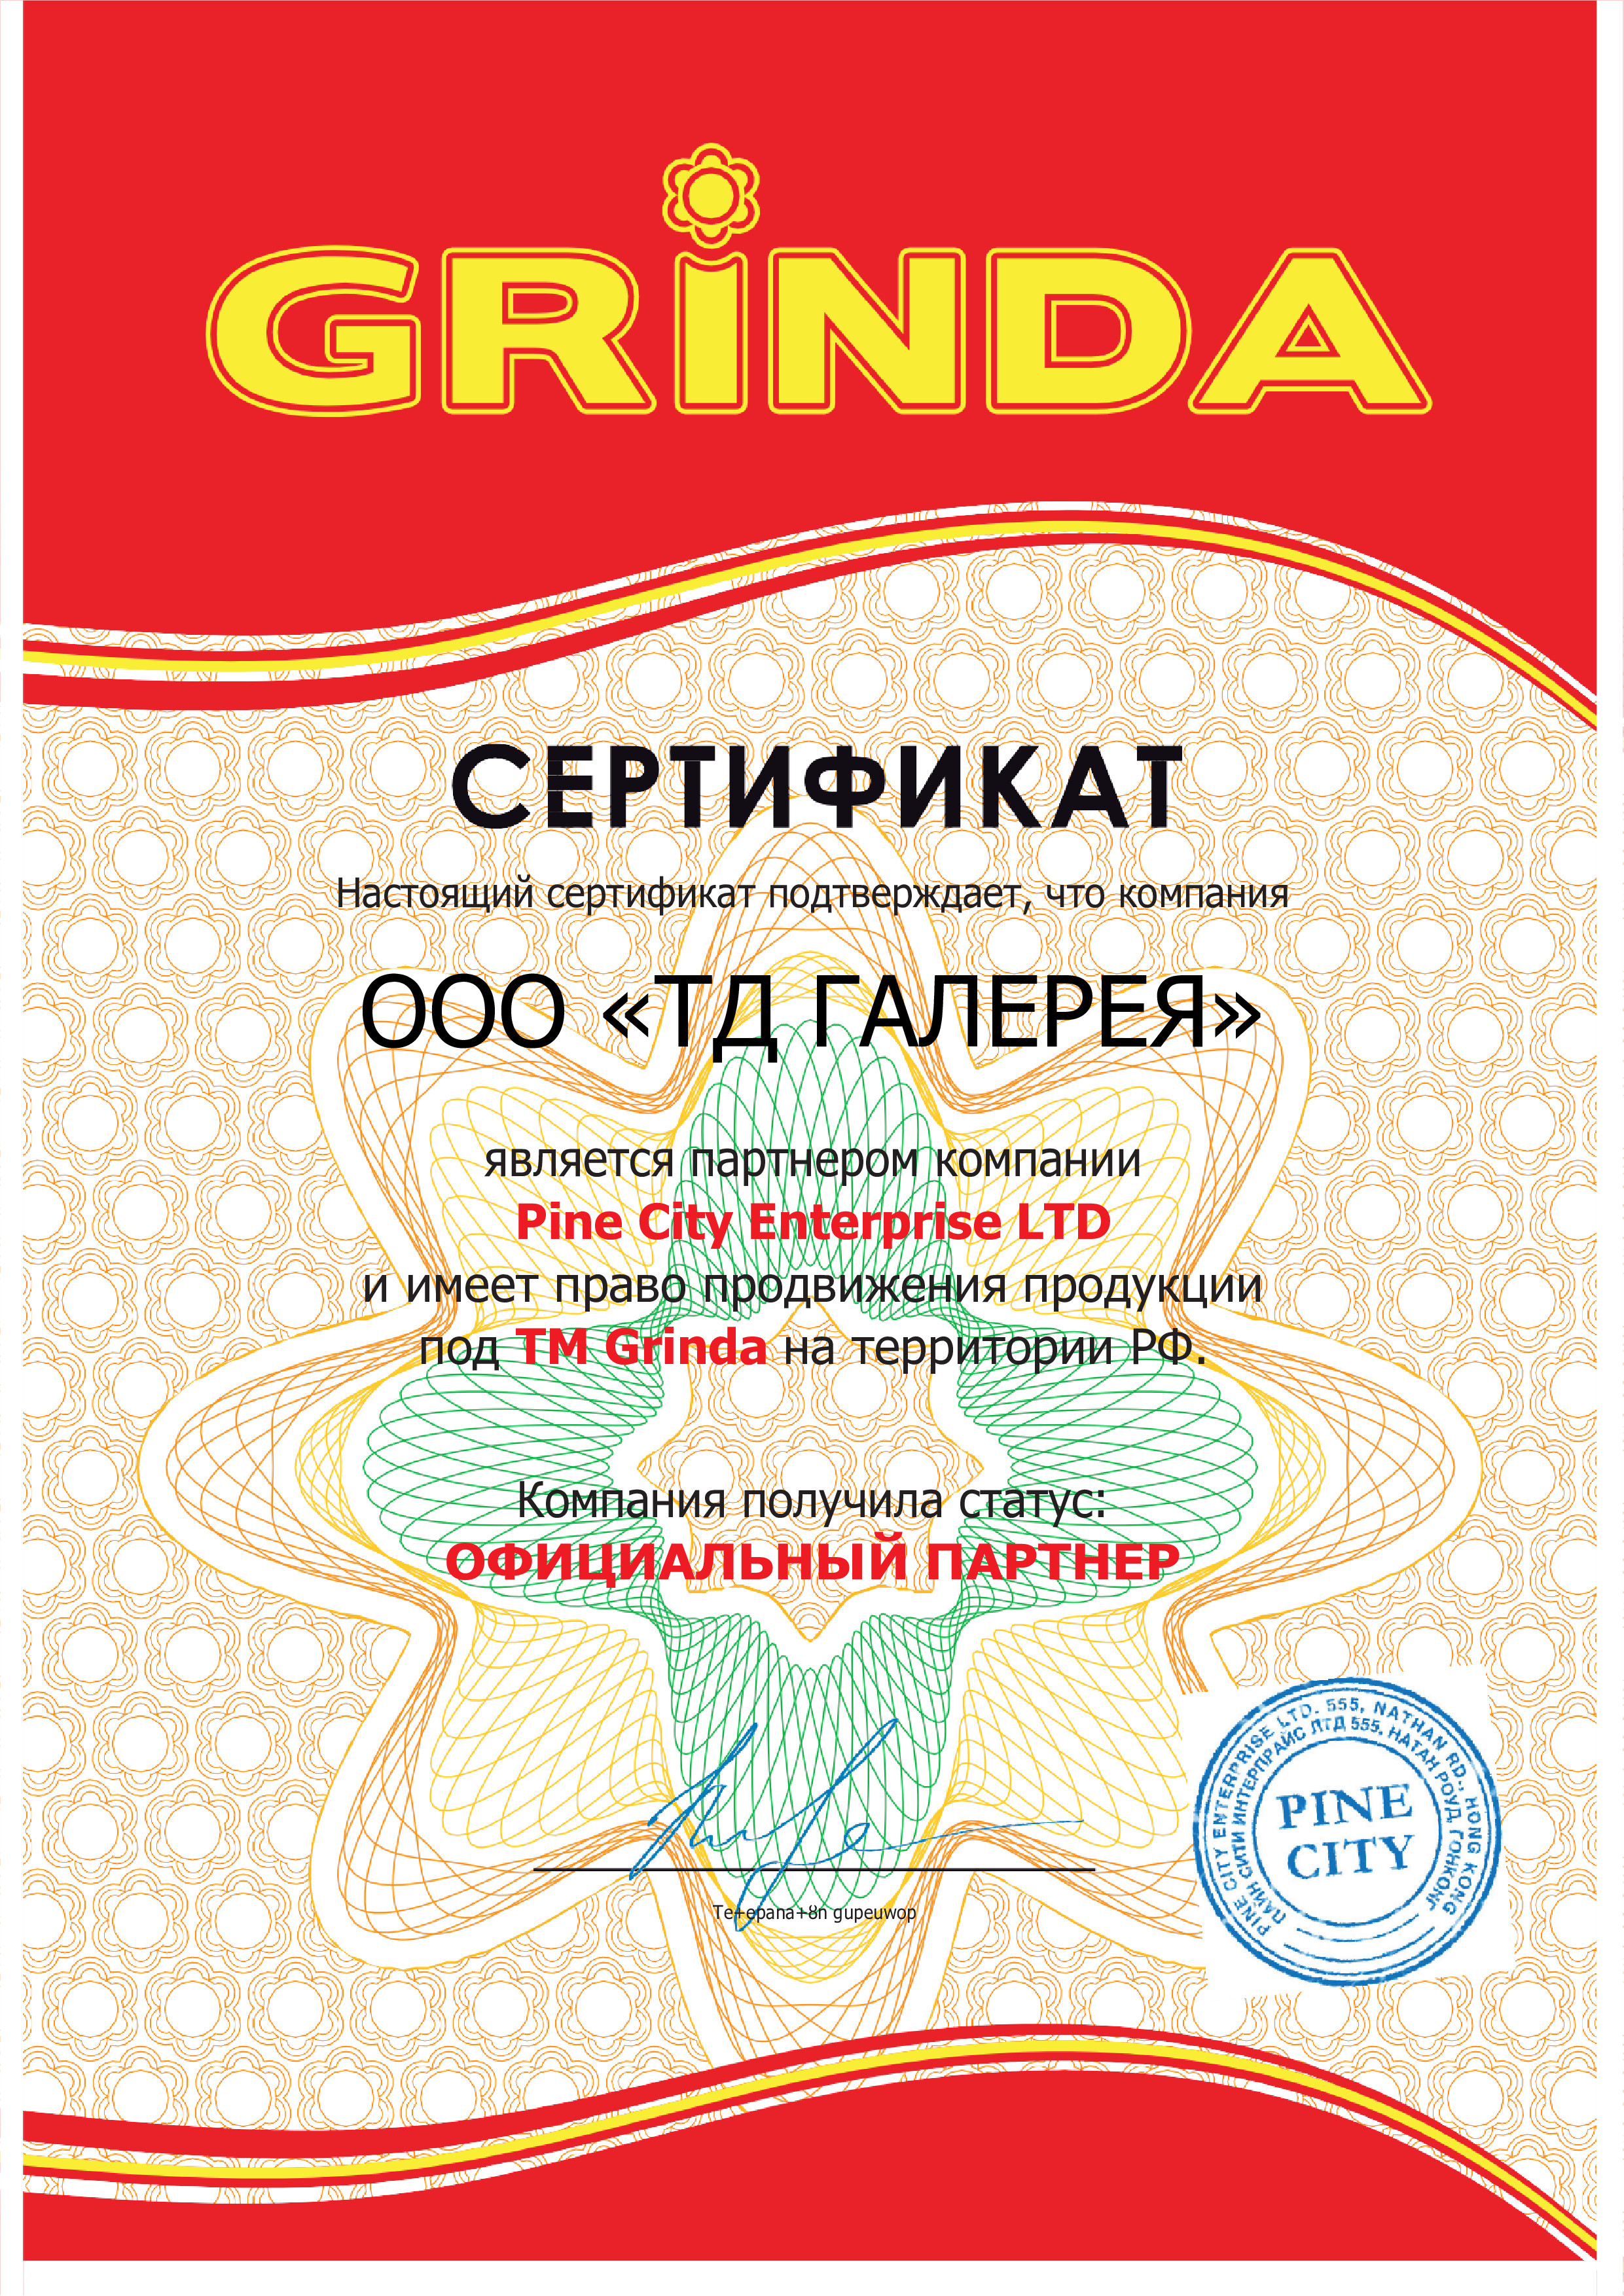 Сертификат Grinda